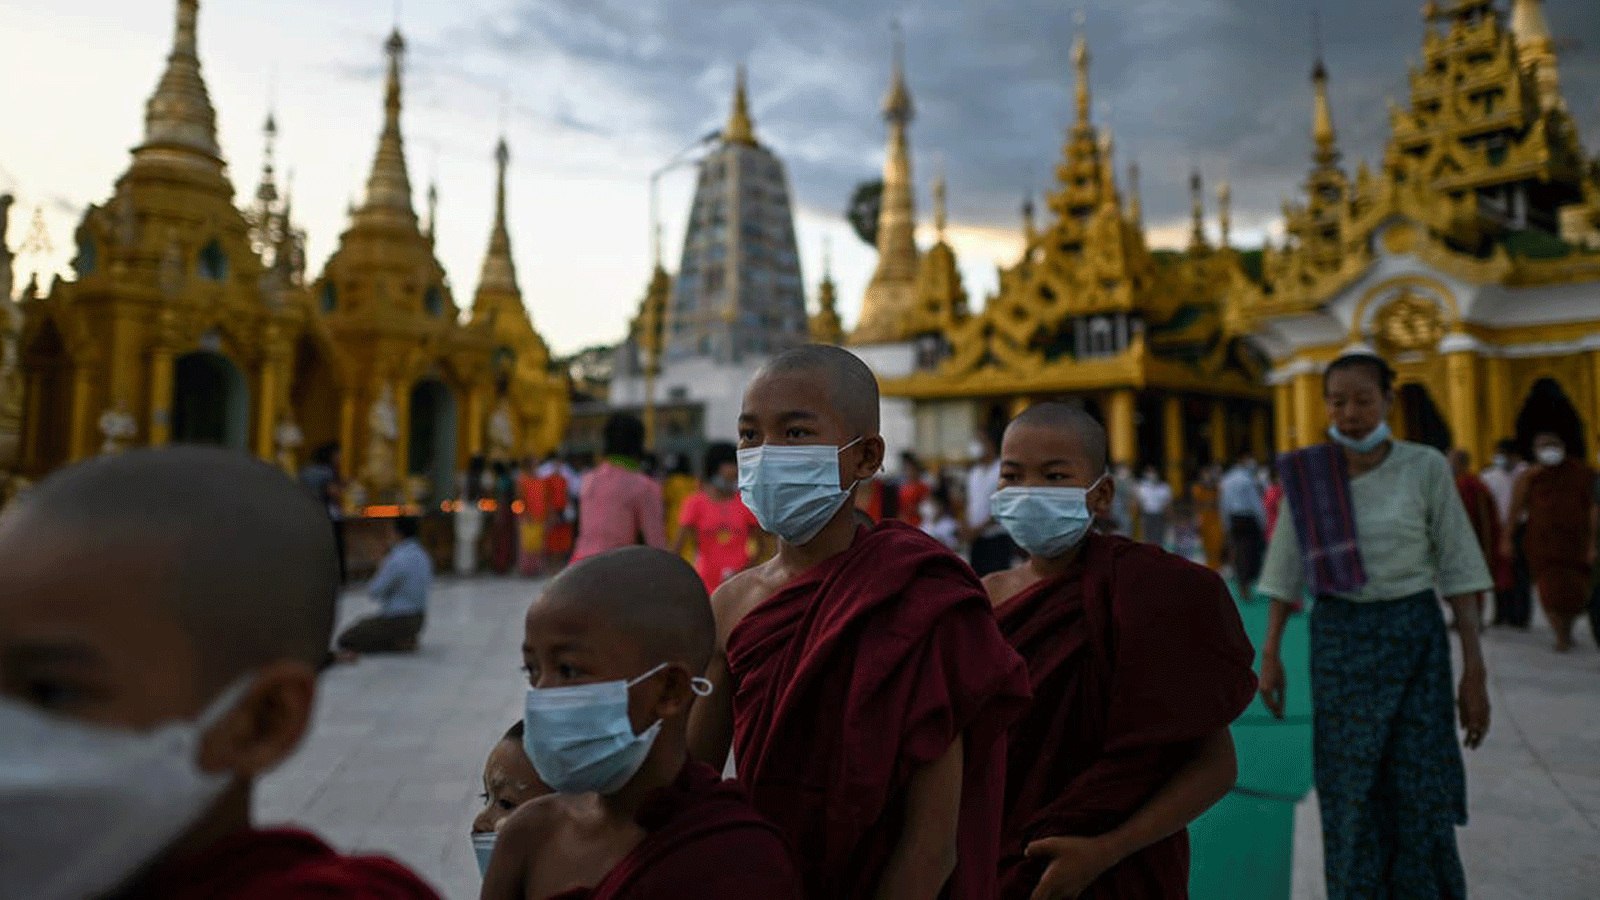 الرهبان يزورون معبد شويداغون خلال مهرجان تادينغيوت الذي يقام في يوم اكتمال القمر في شهر تادينغيوت القمري البورمي. في يانغون في 20 تشرين الأول/أكتوبر 2021.